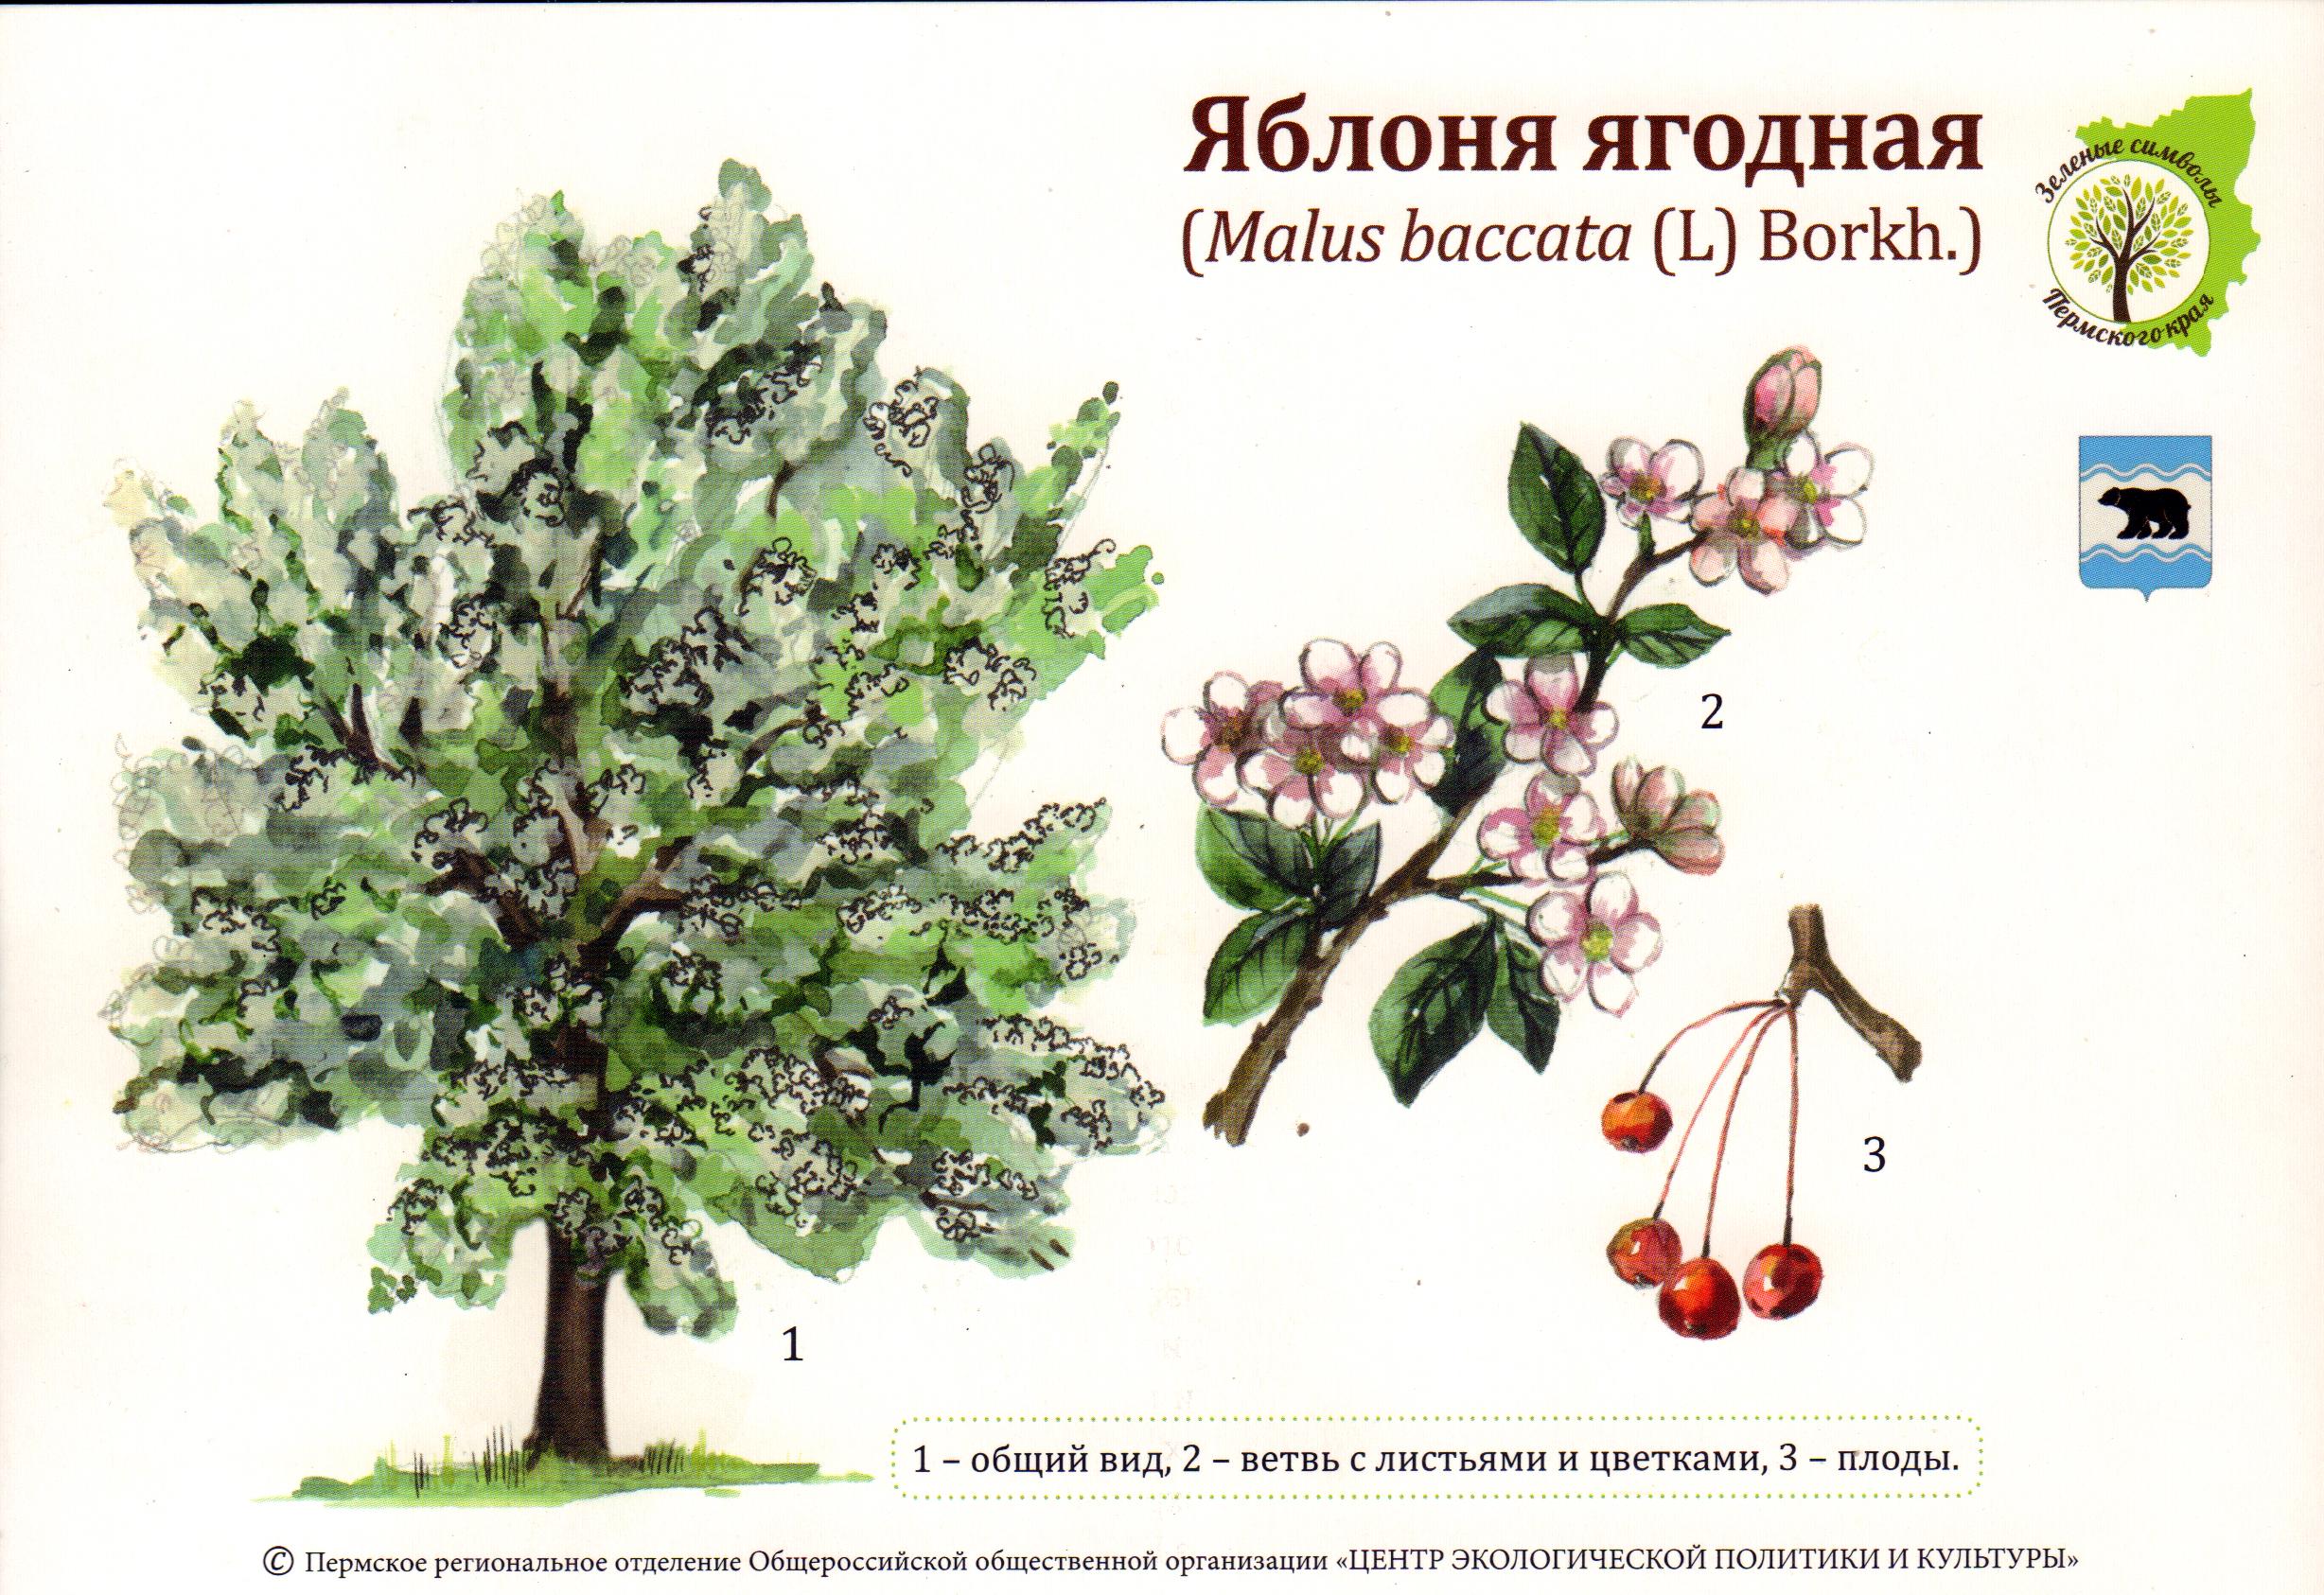 Яблоня Ягодная (Malus baccata l.)